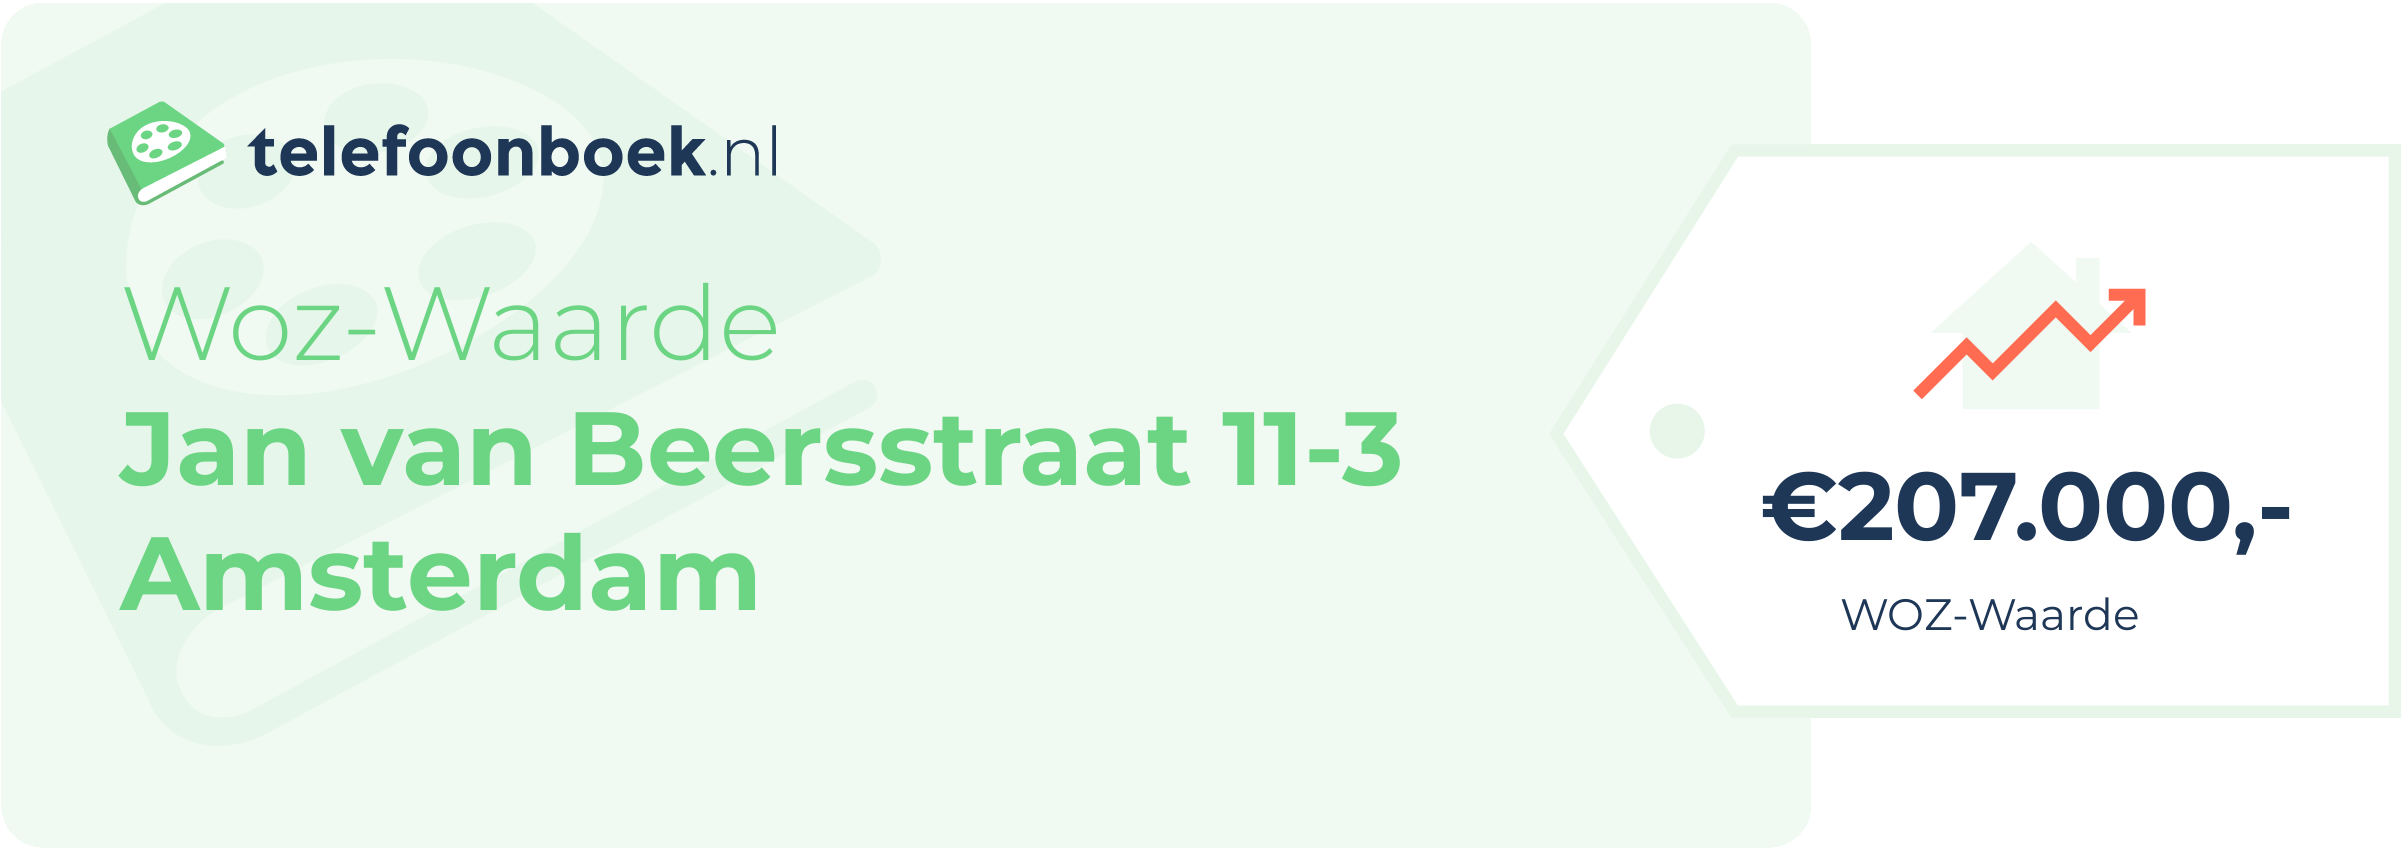 WOZ-waarde Jan Van Beersstraat 11-3 Amsterdam